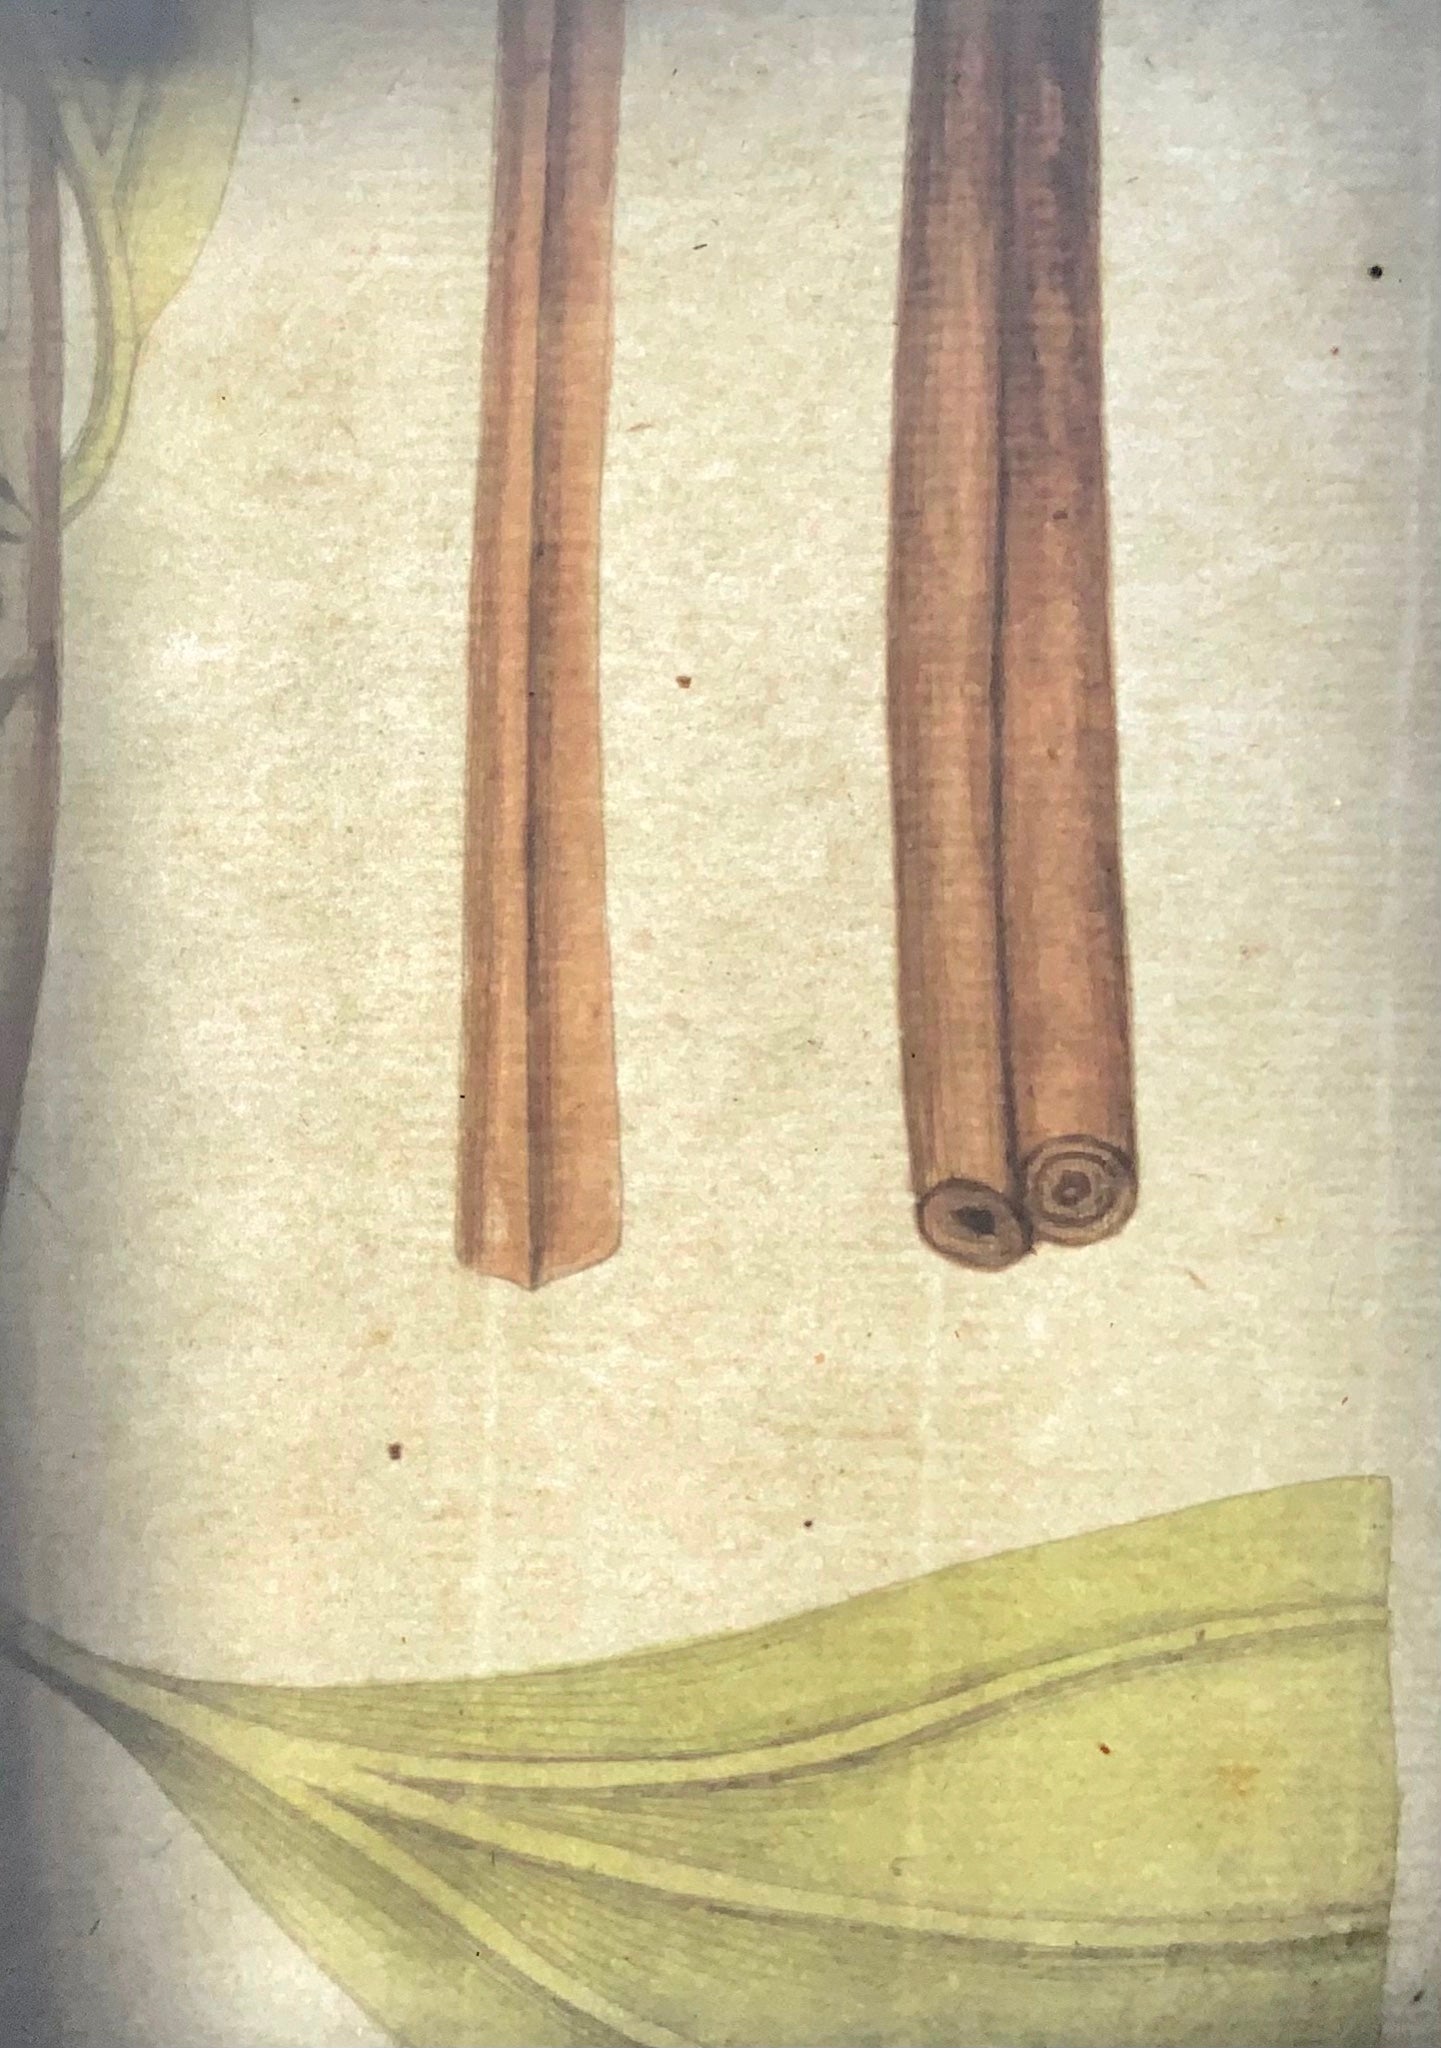 1788 JJ Plenck (b1737), cannelle chinoise, grand folio coloré à la main, botanique